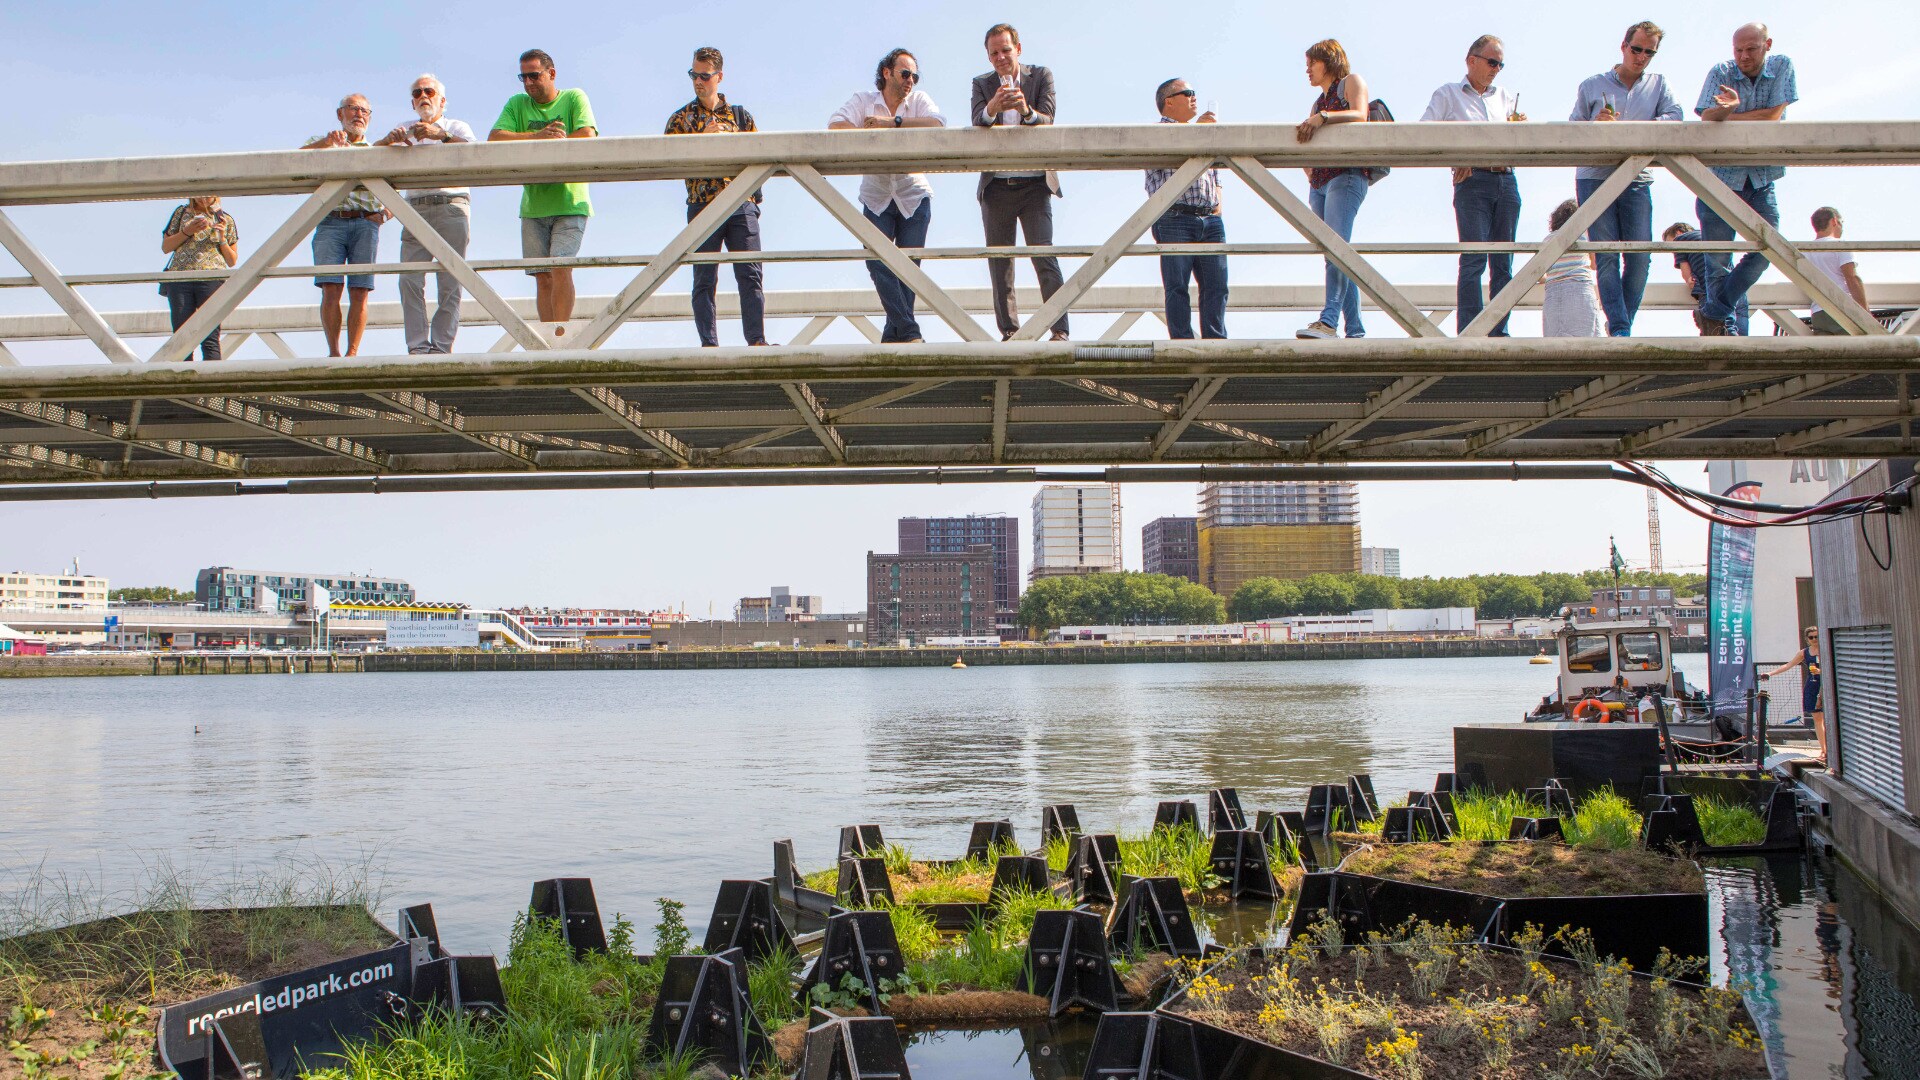 ljudje z mostu opazujejo plastične otoke na reki  Nieuwe Maas